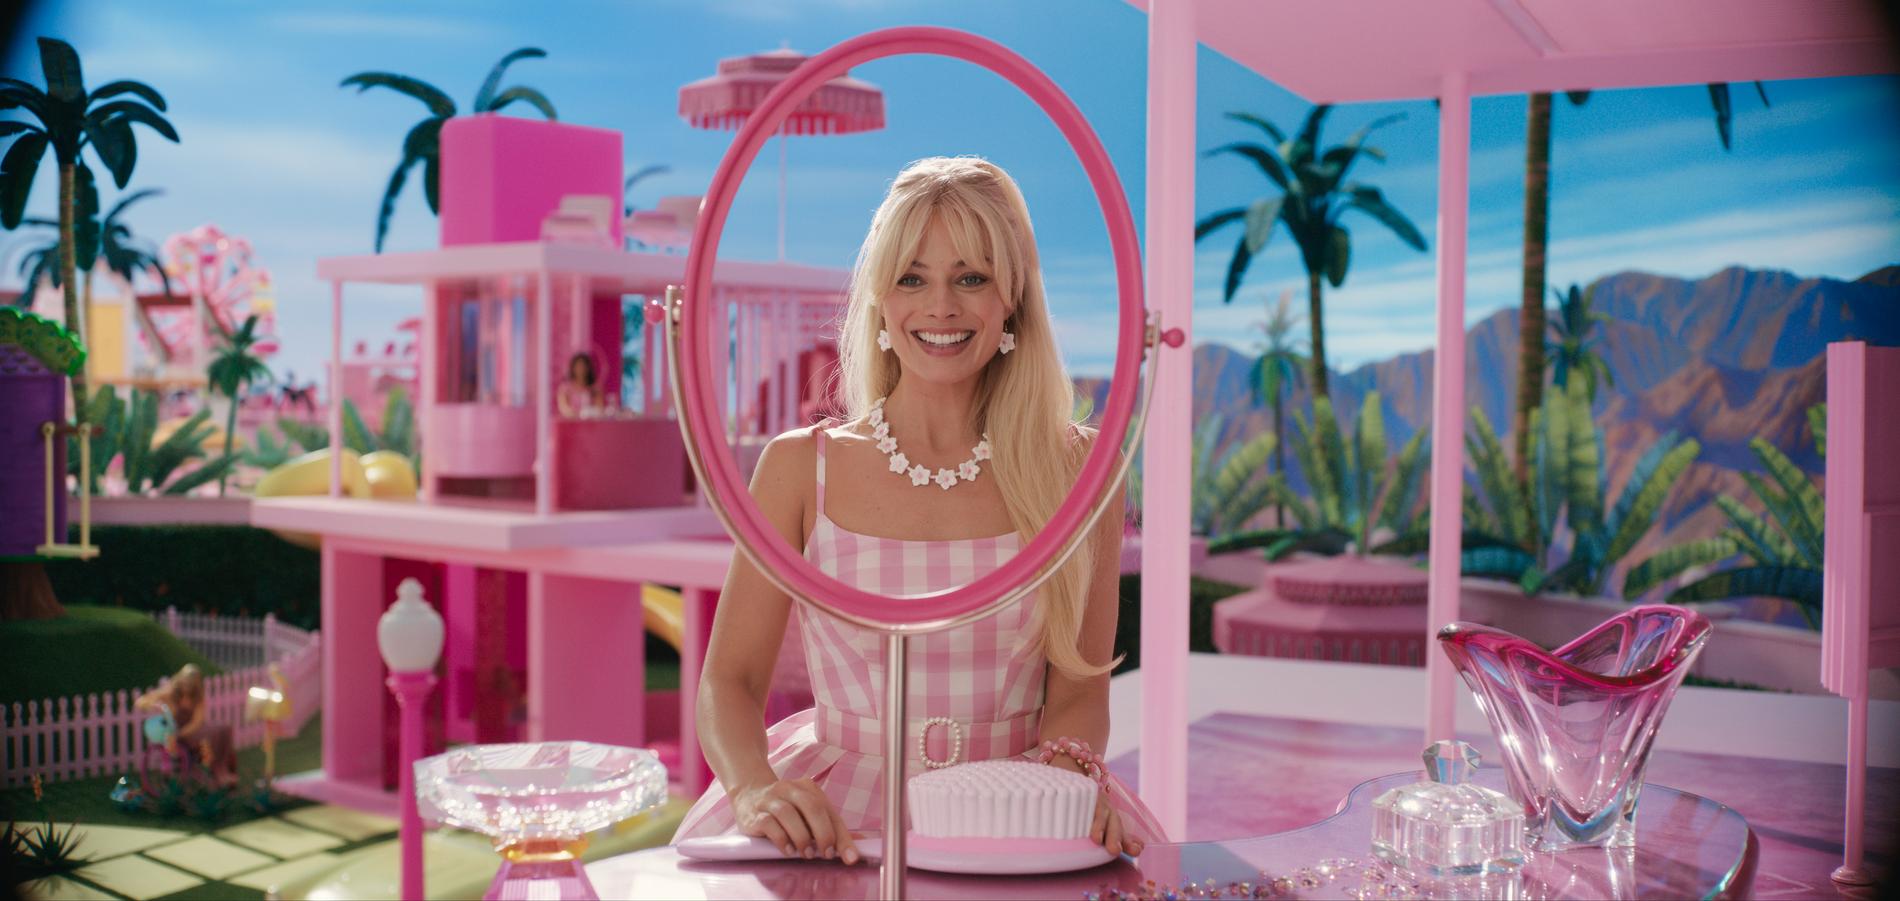 Filmen ”Barbie” har premiär den 21 juli.